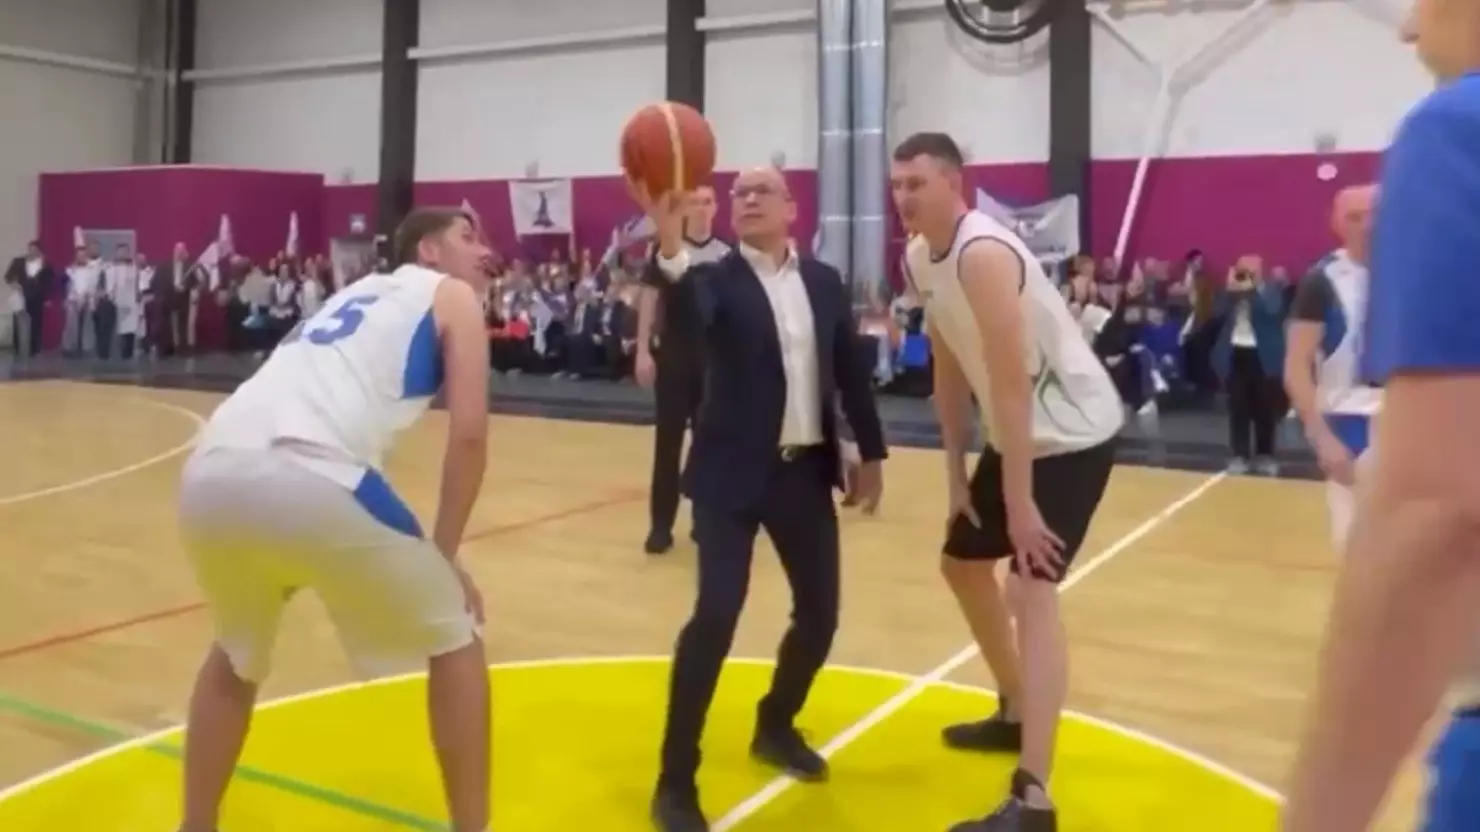 Сборные сарапульских заводов открыли новый спорткомплекс баскетбольным матчем